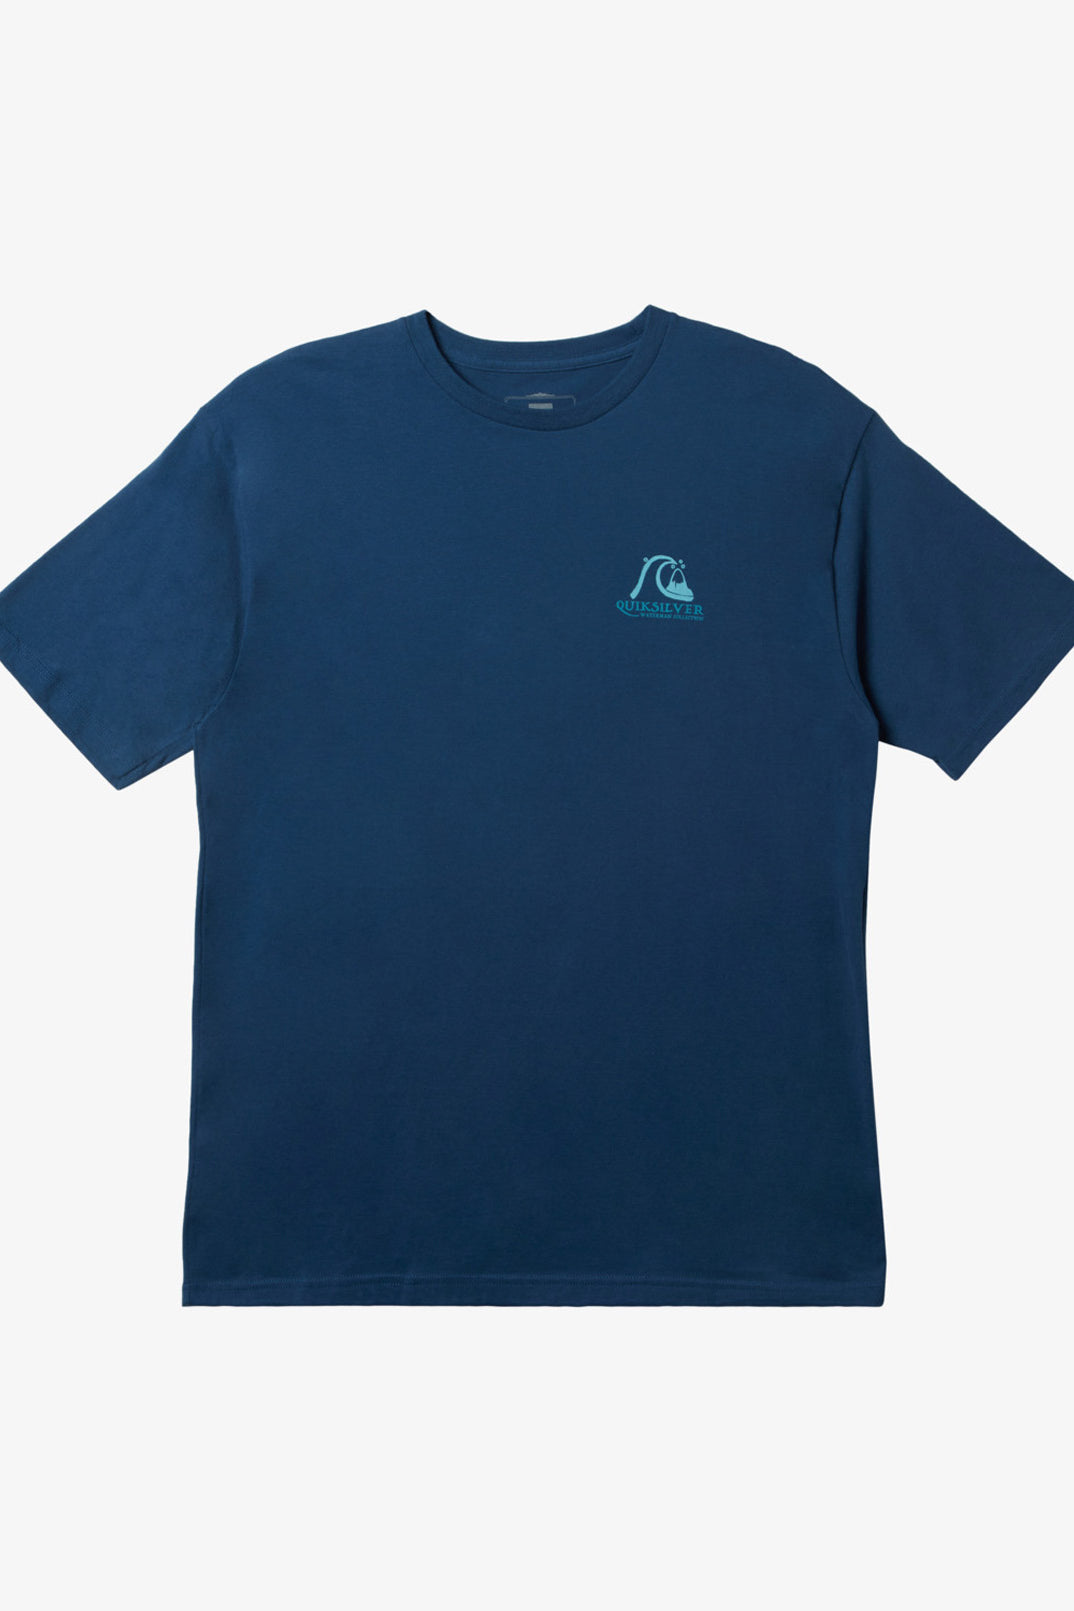 Quiksilver: Waterman Get Jiggy T-Shirt